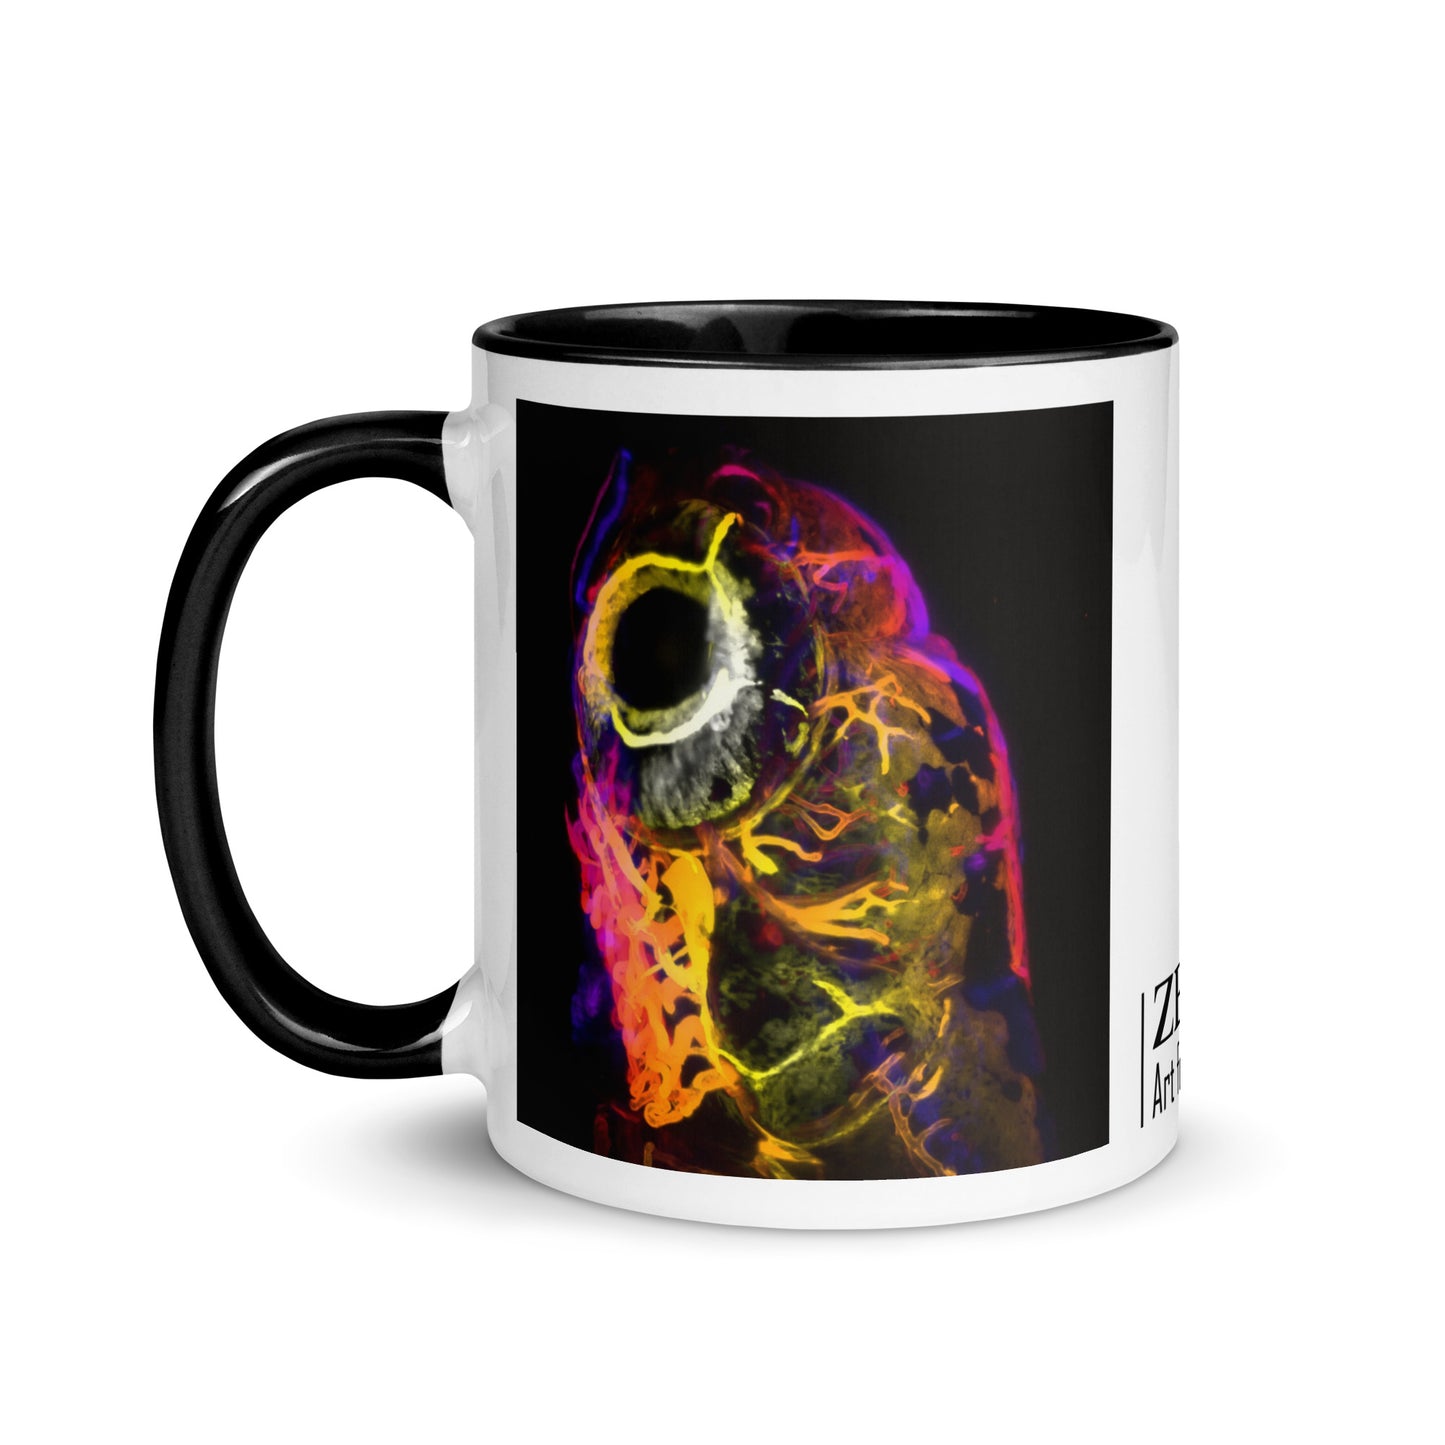 Science Art Mug - Firefly - Zeeks - Art for Geeks